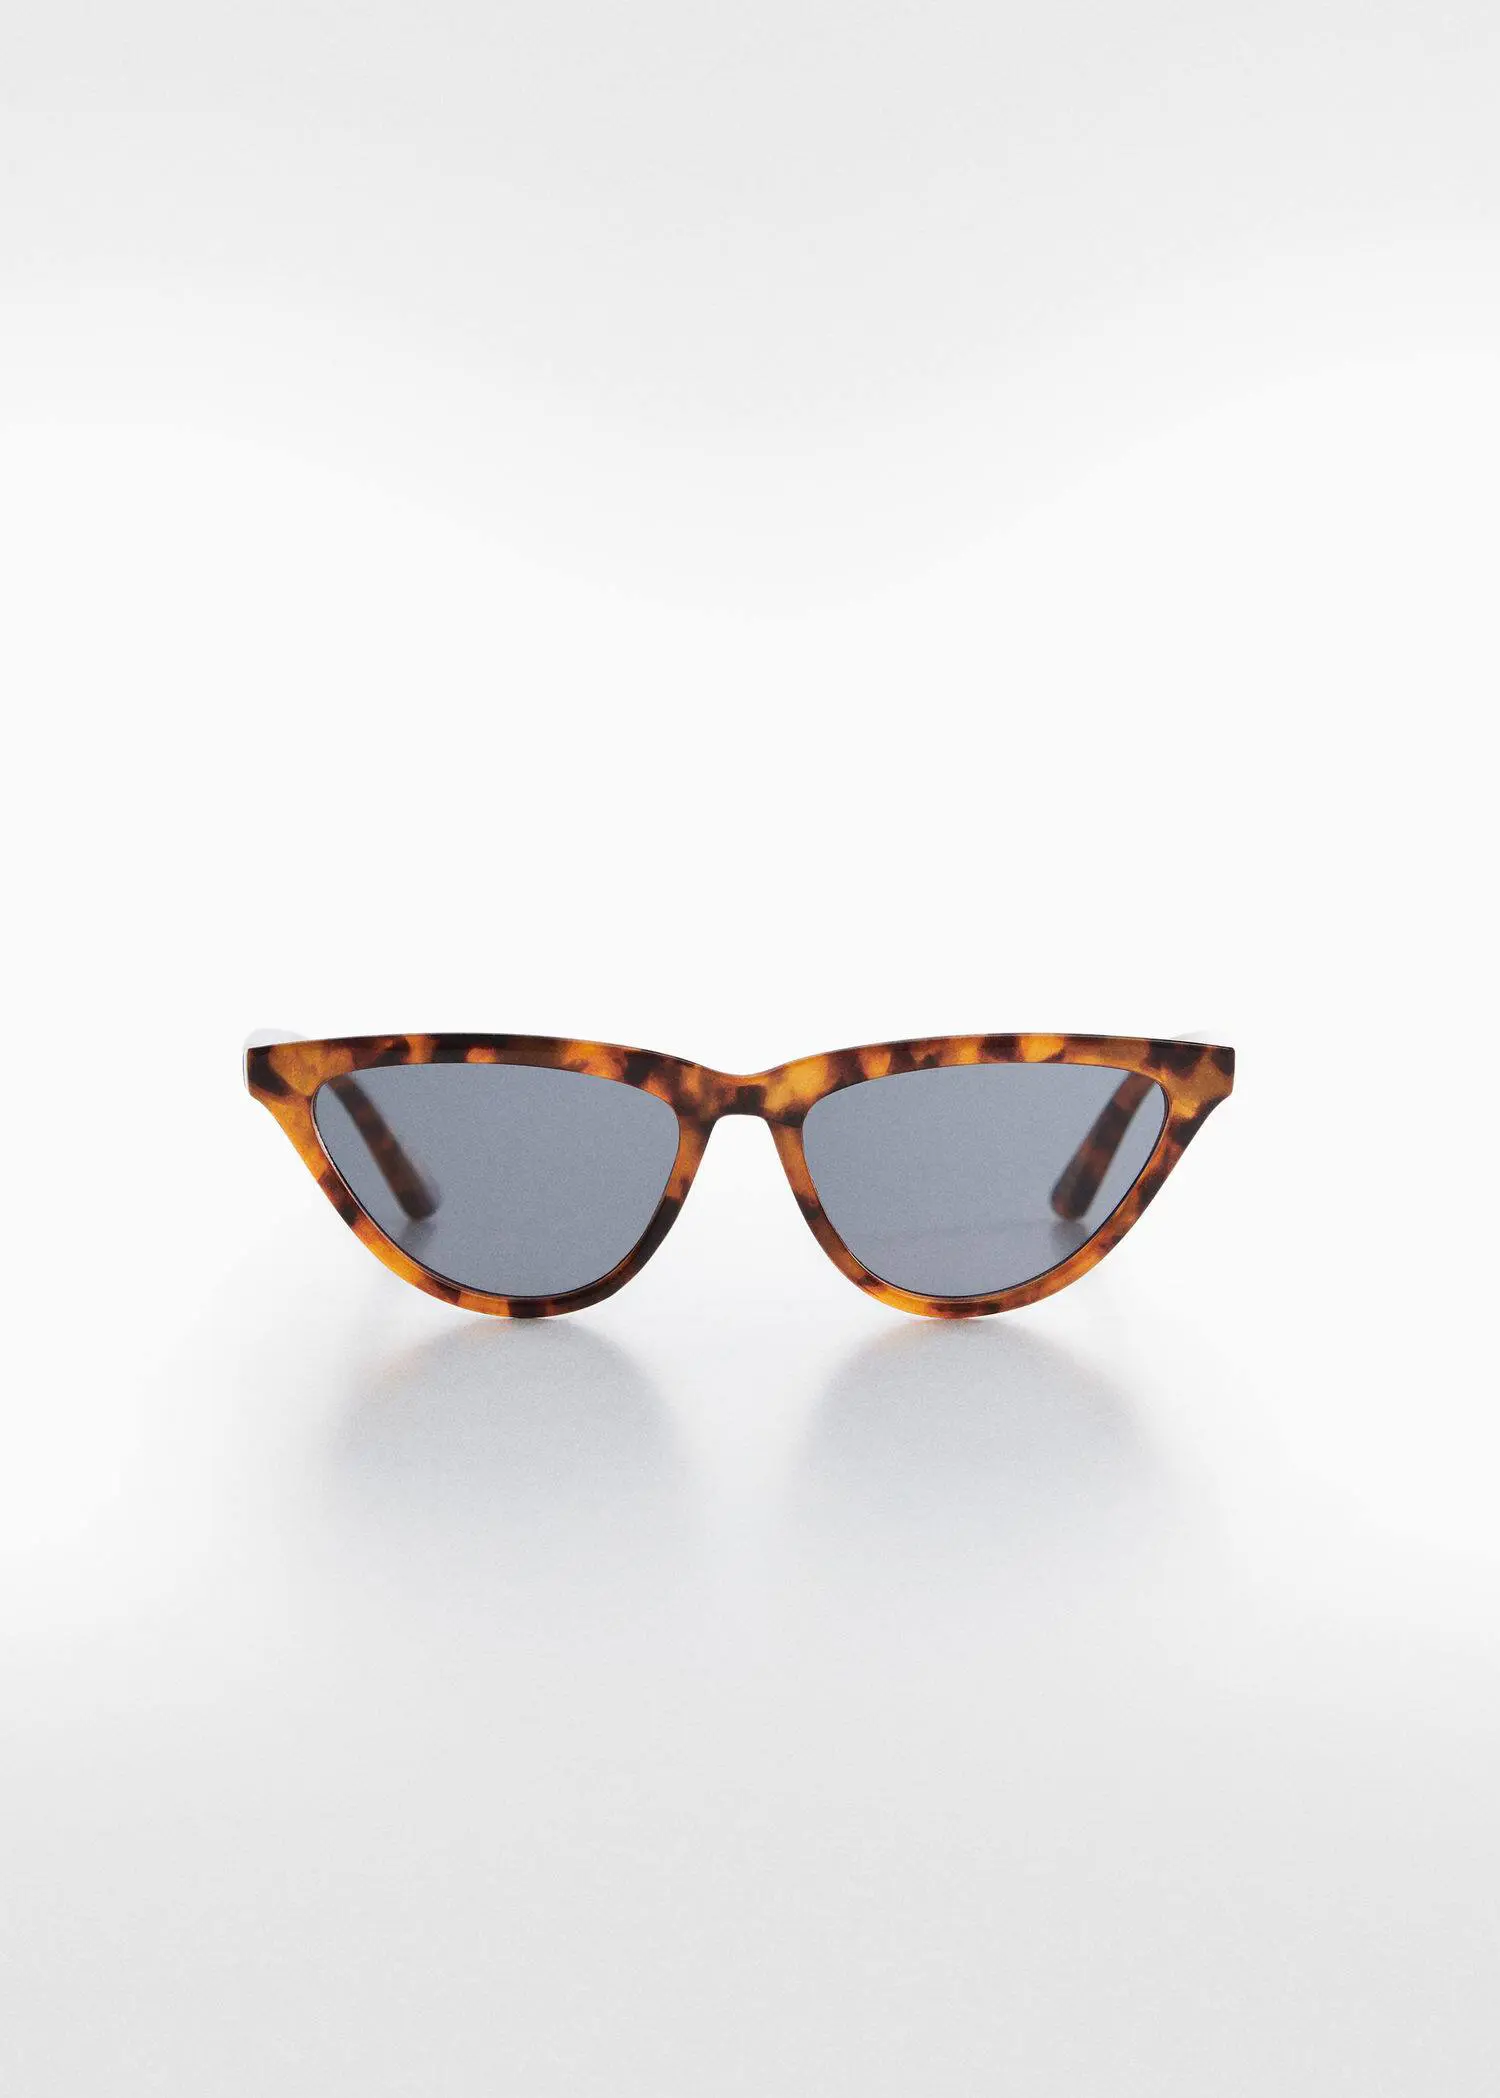 Mango Sonnenbrille im Retro-Stil. 1